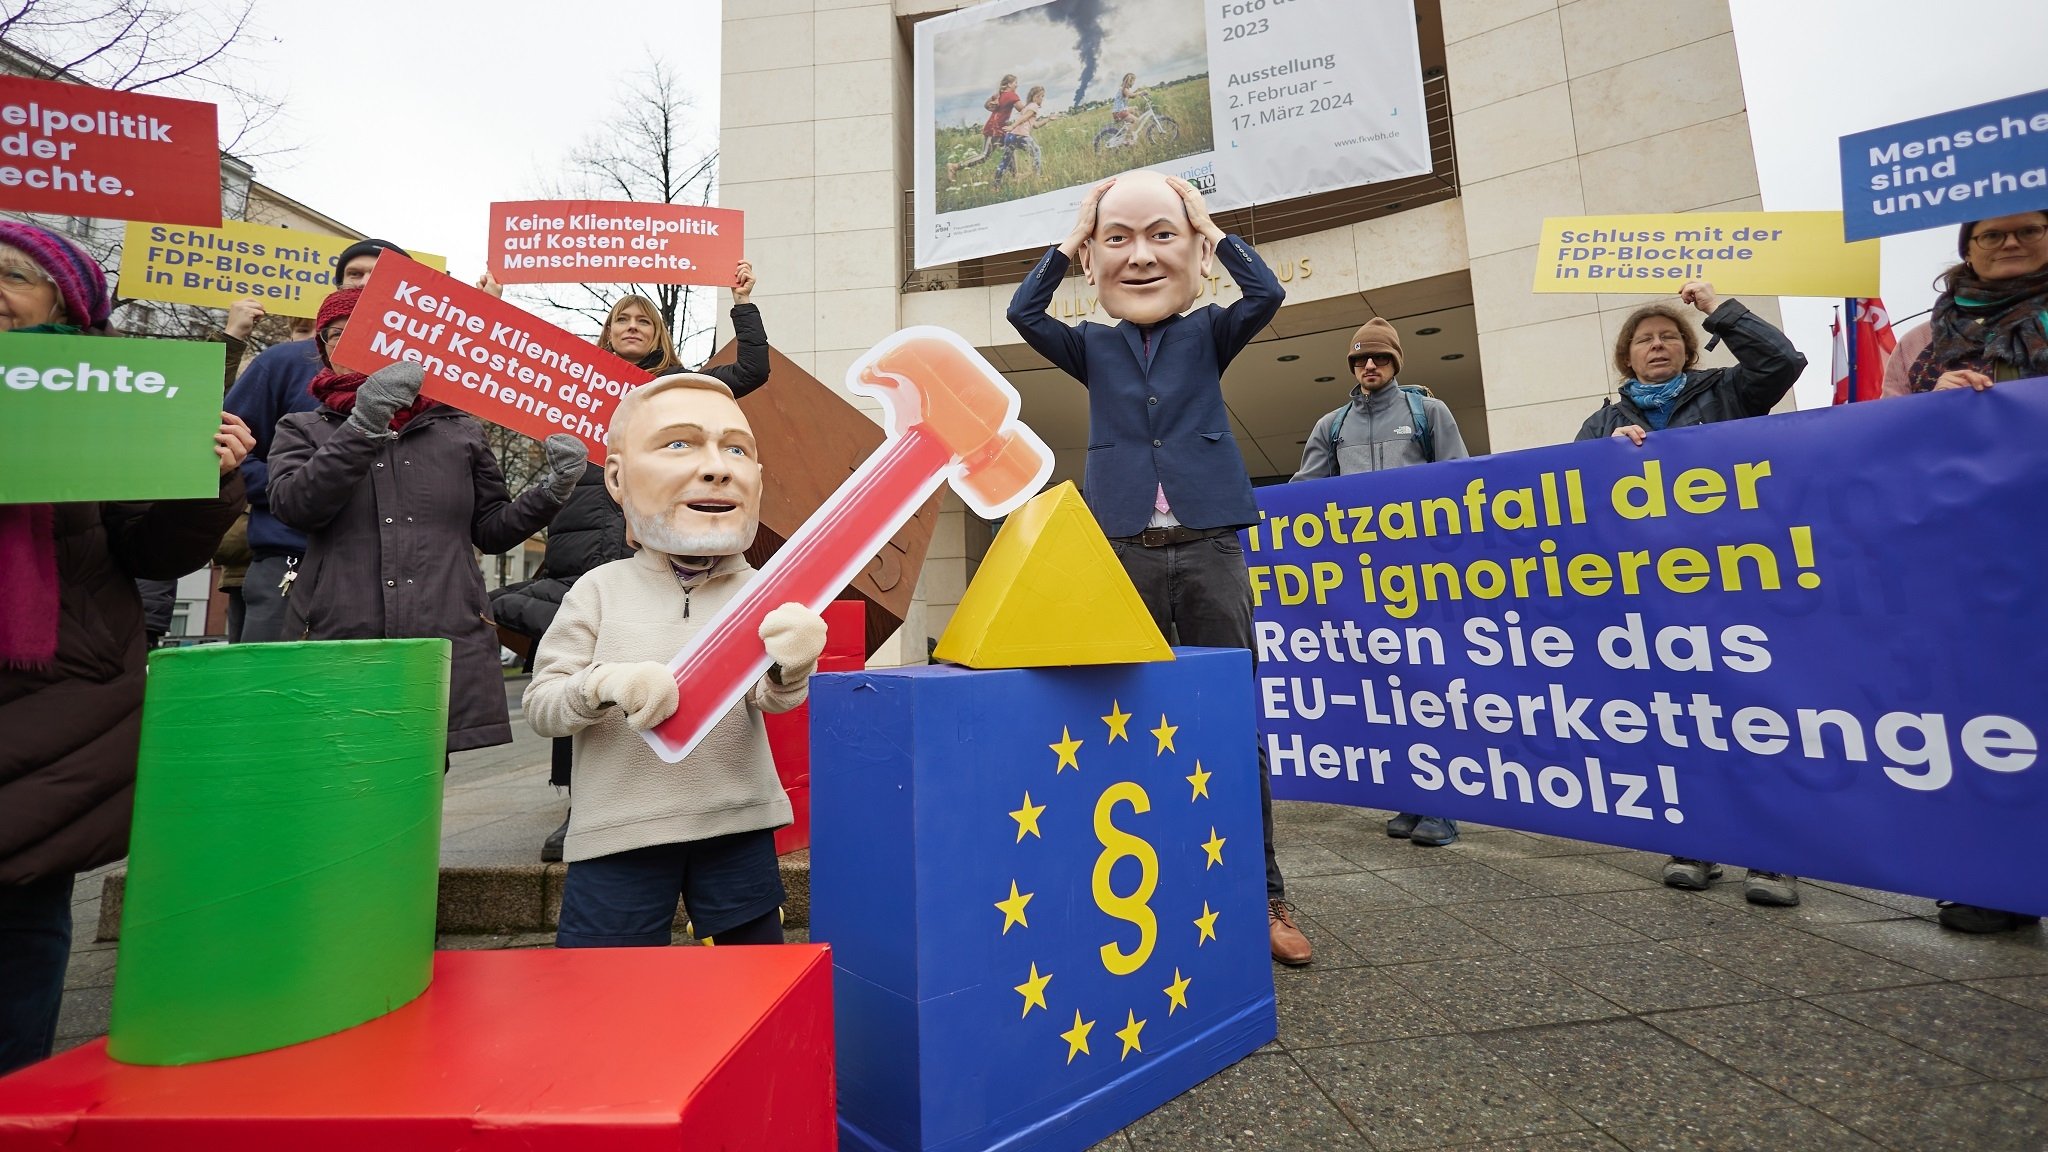 Proteste in Berlin nach der FDP-Blockade der CSDDD